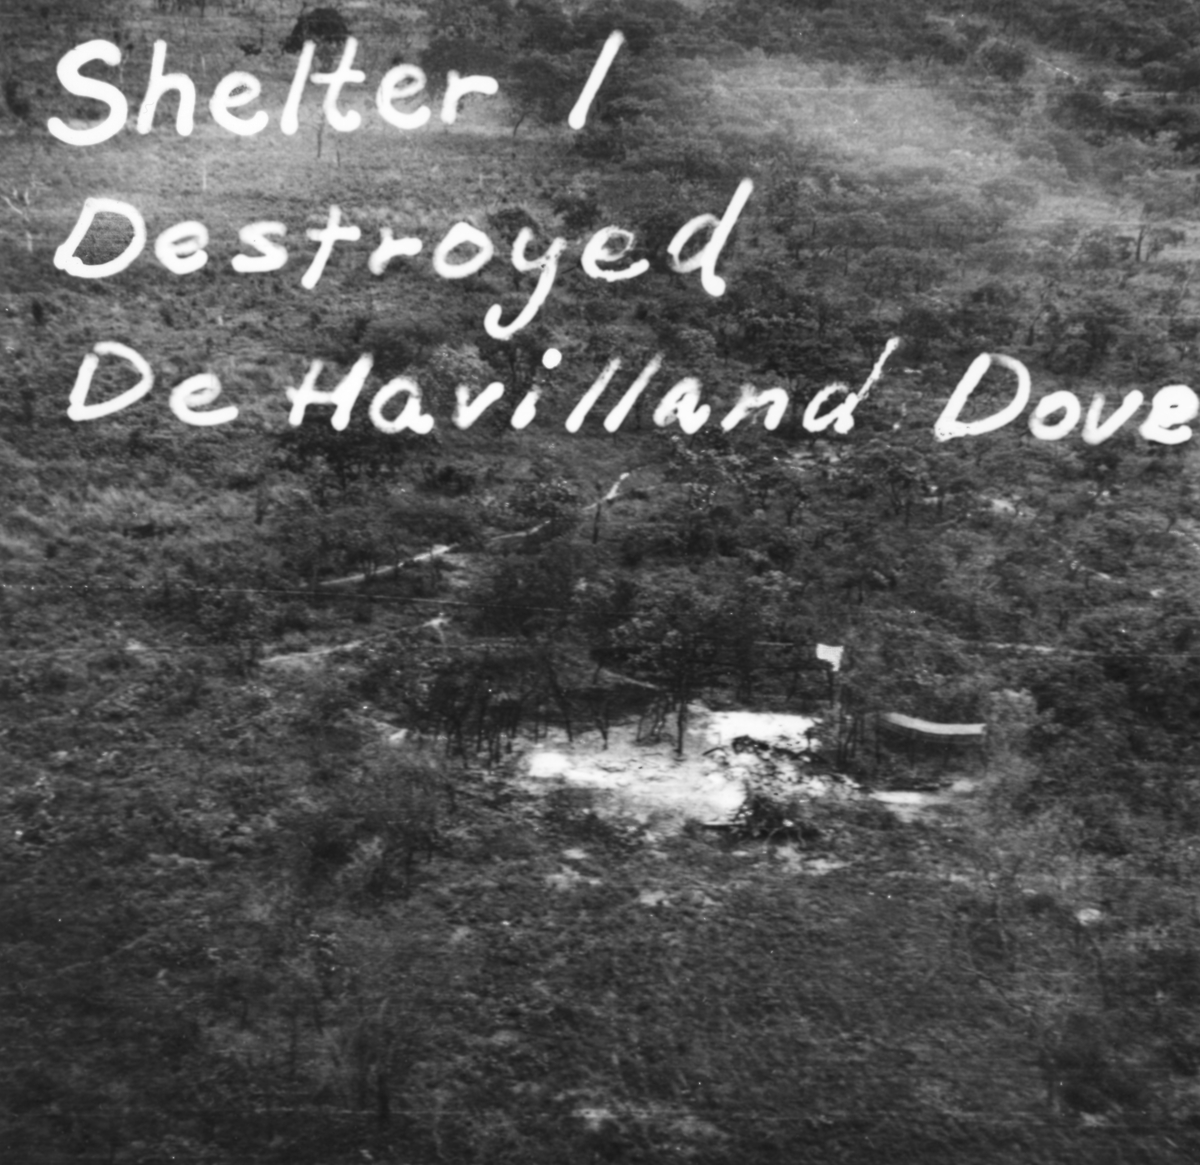 Flygspaningsbild av katangesiskt flygplan De Havilland Dove i flygplanvärn. Foto taget efter anfall av F 22 under Kongokrisen, den 29 december 1962. Med påritad spaningsinformation "Shelter 1 Destroyed De Havilland Dove".